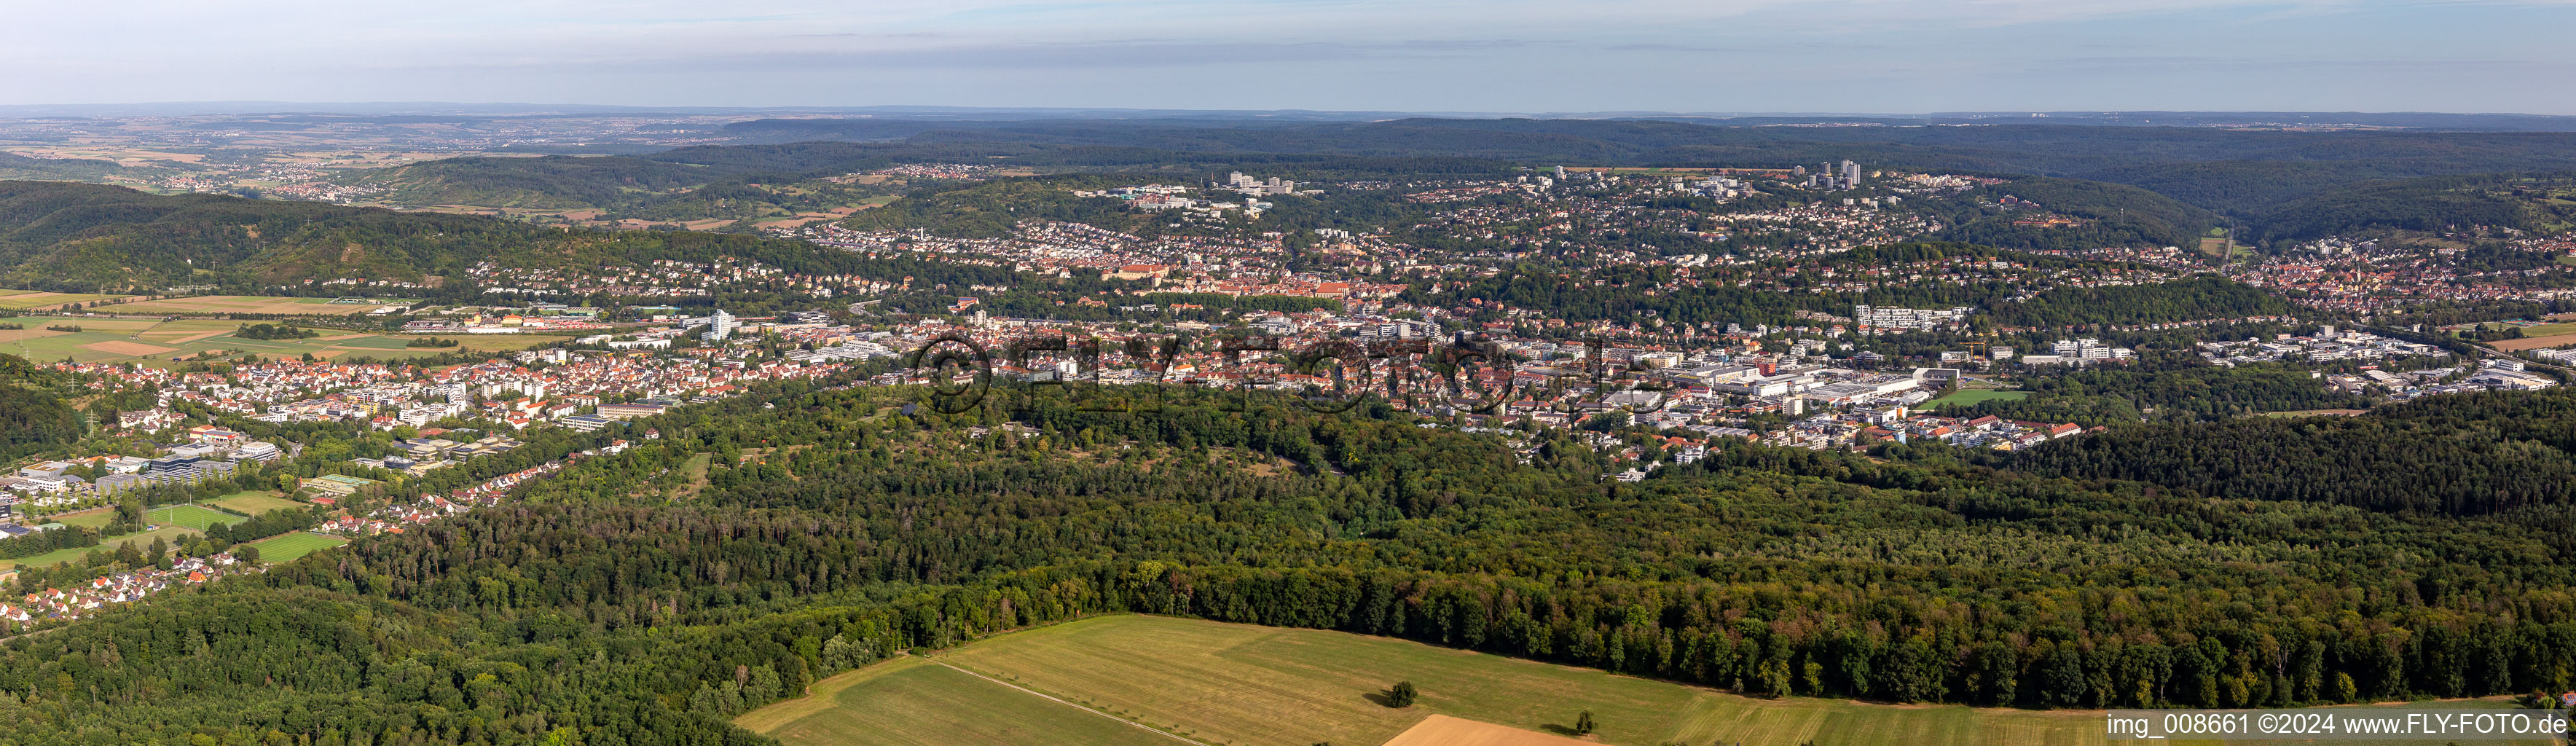 Panorama Perspektive Stadtgebiet mit Außenbezirken und Innenstadtbereich in Tübingen im Bundesland Baden-Württemberg, Deutschland